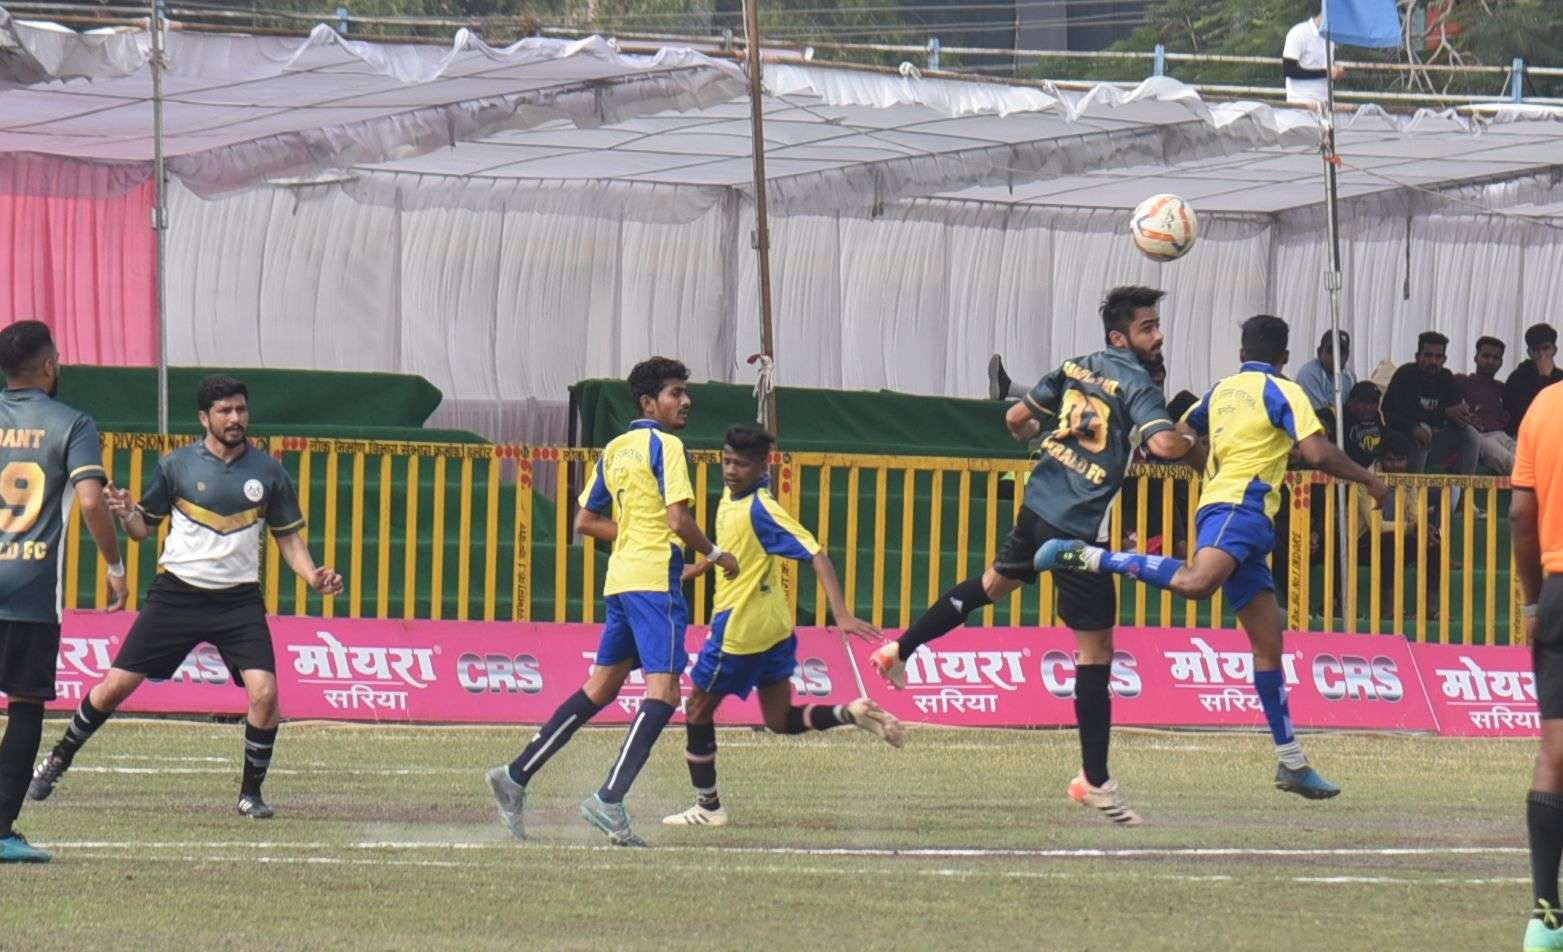 सेंट्रल जिमखाना क्लब द्वारा आयोजित प्रकाश सोनकर व सरेश एरन स्मृति अखिल भारतीय
मोयरा गोल्ड कप फुटबॉल स्पर्धा